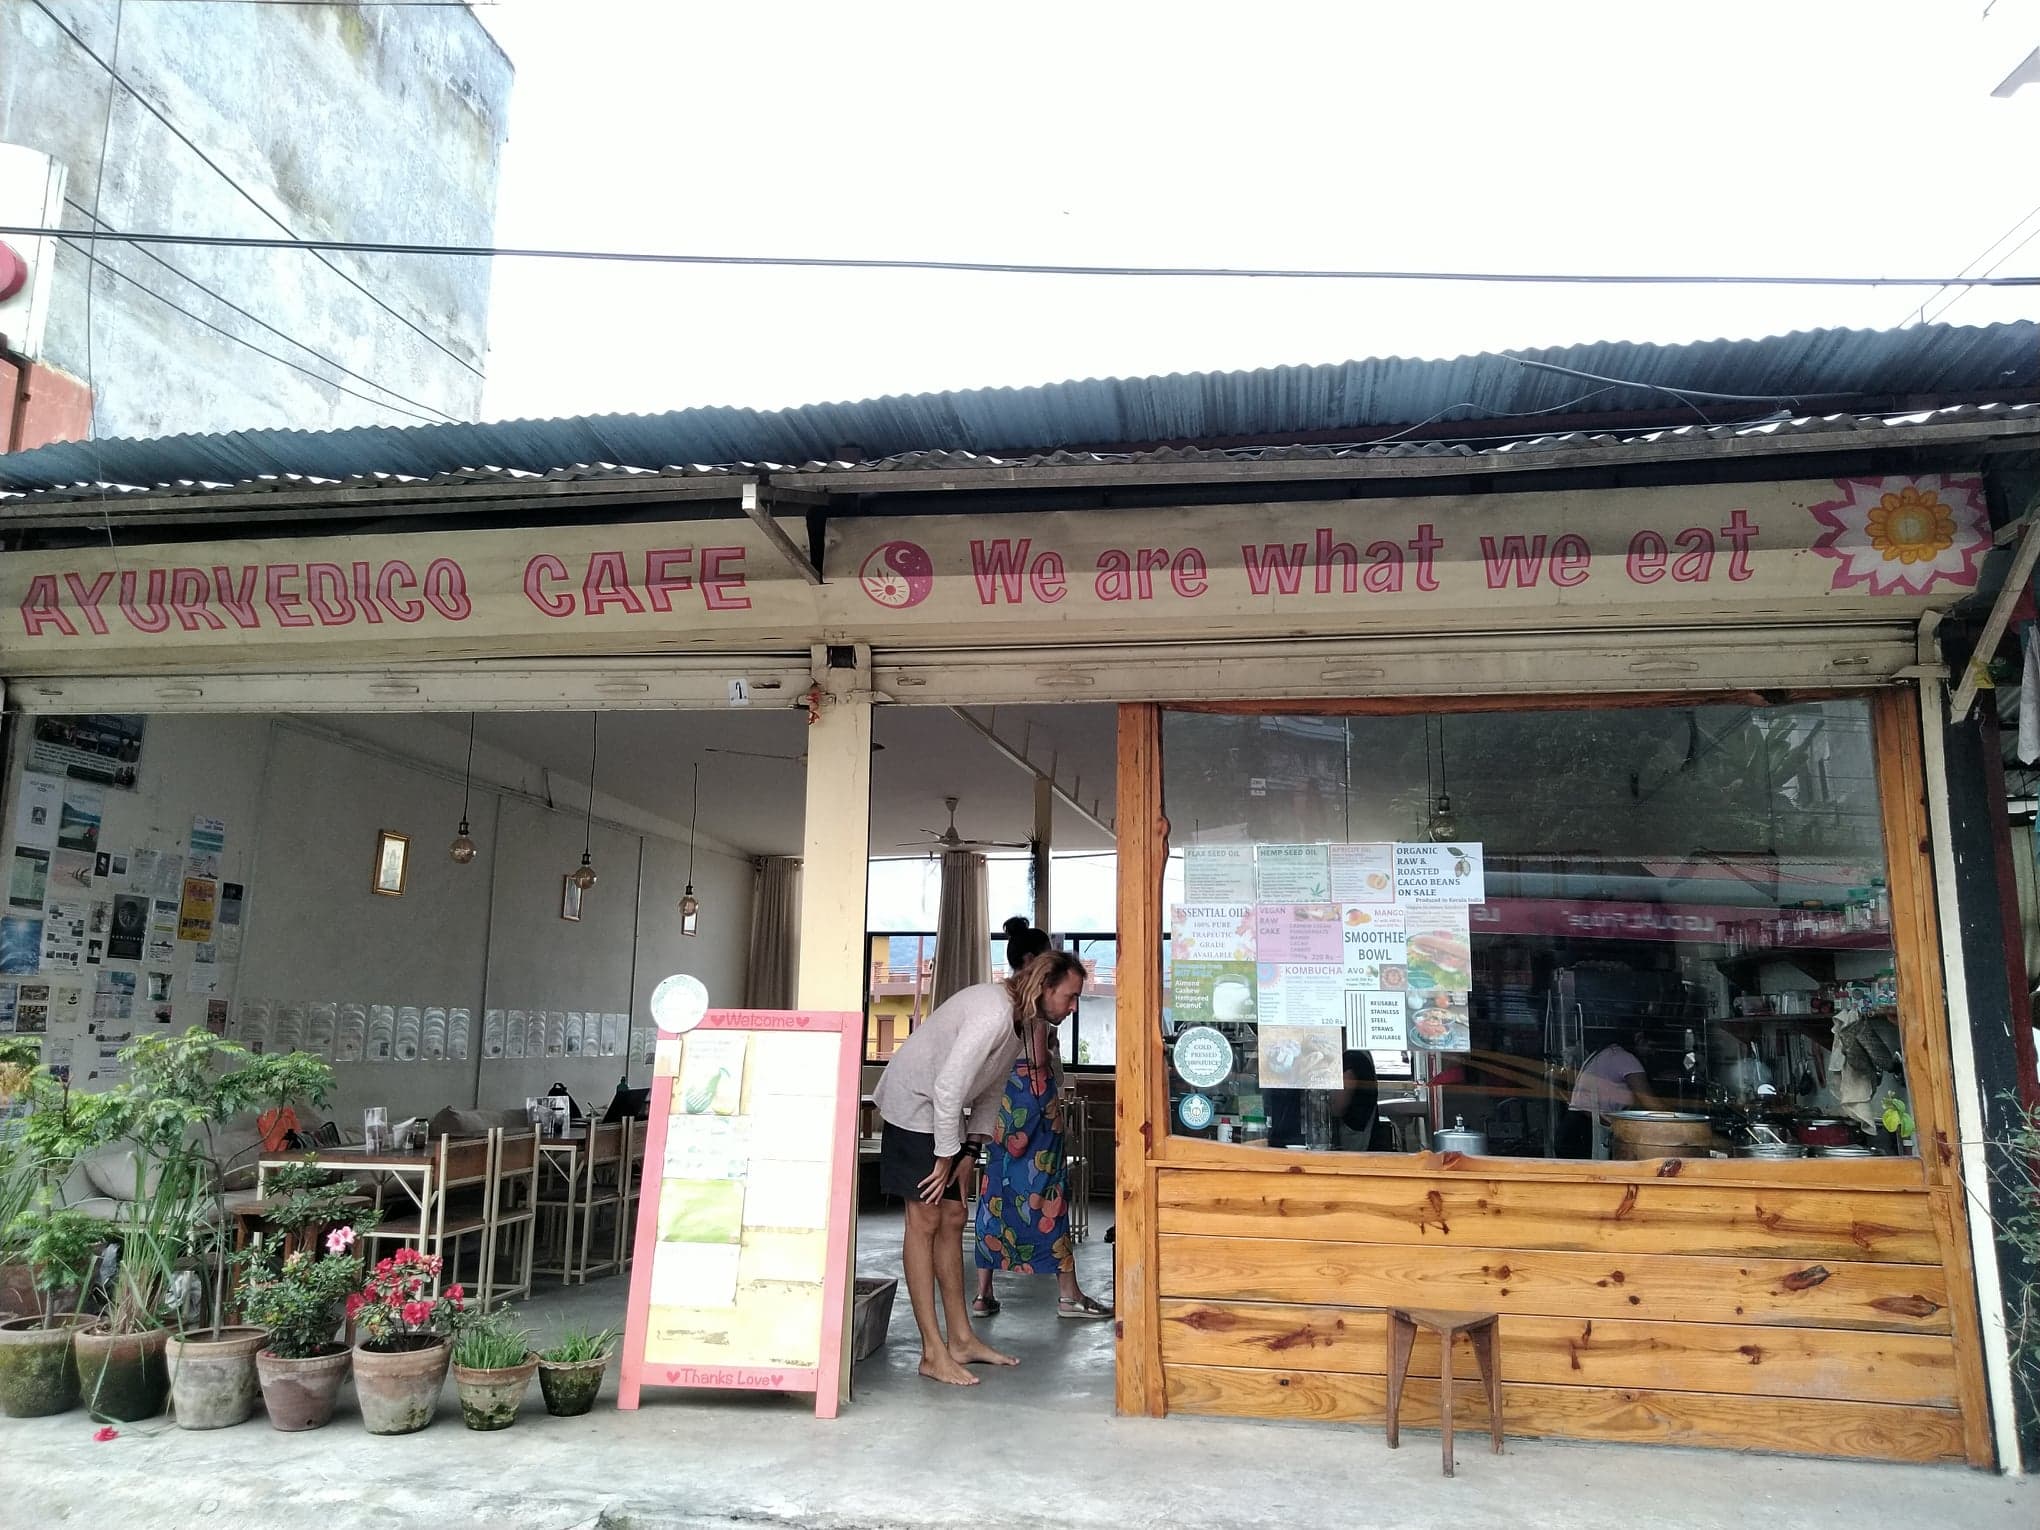 Ayurvedico Cafe / Phokara Nepal